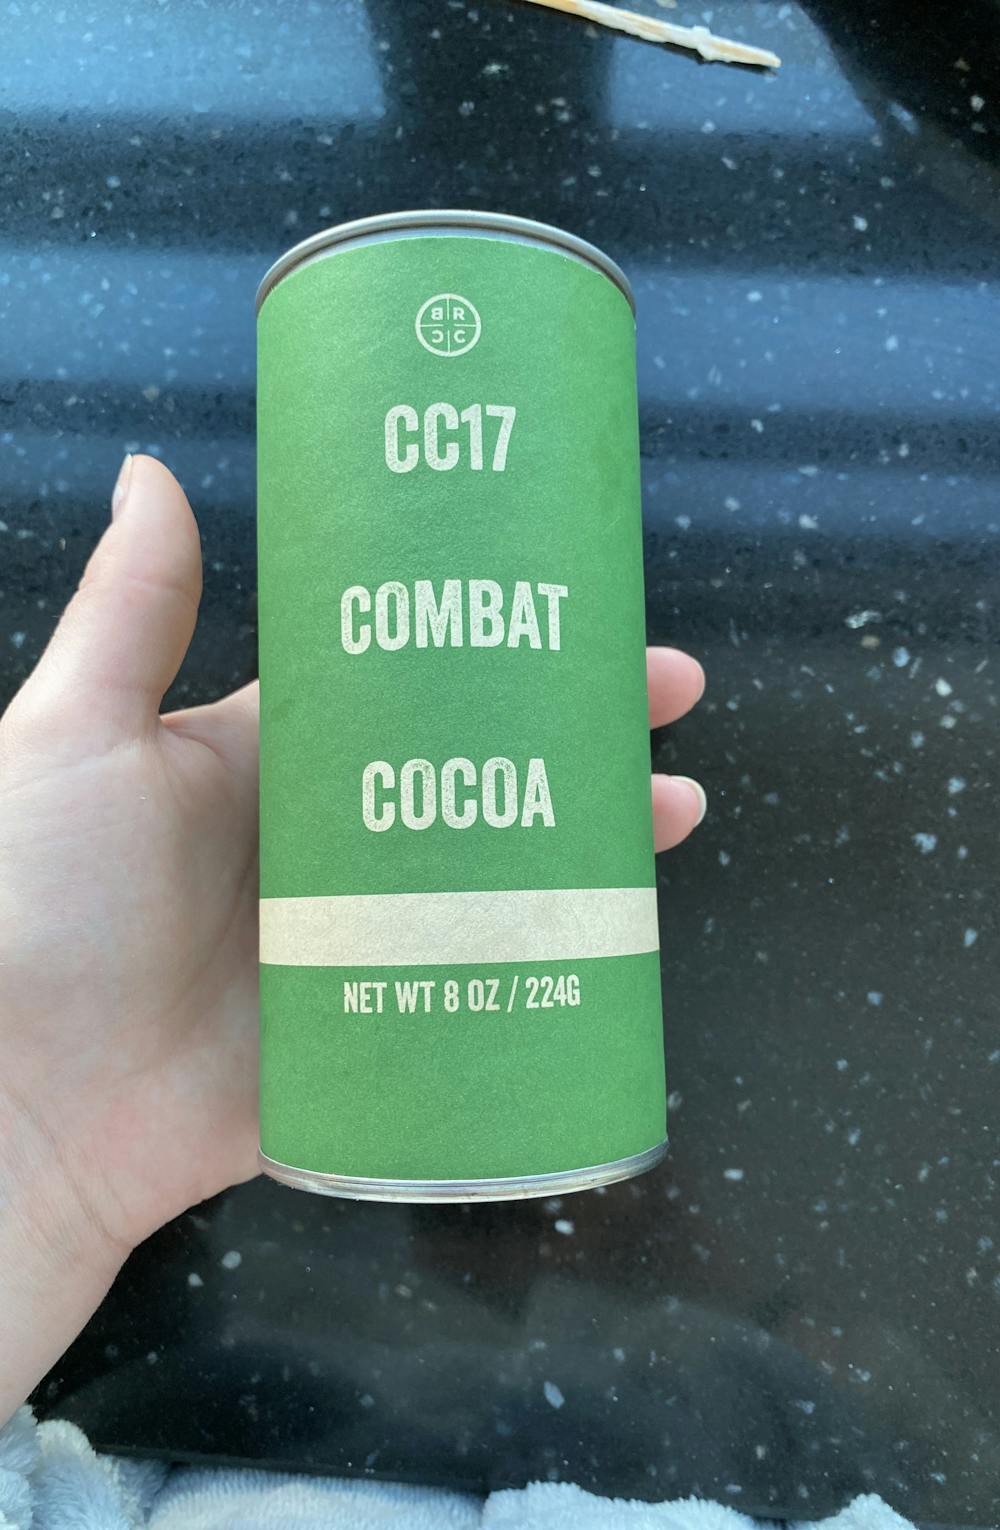 Combat cocoa, Black rifle coffee company